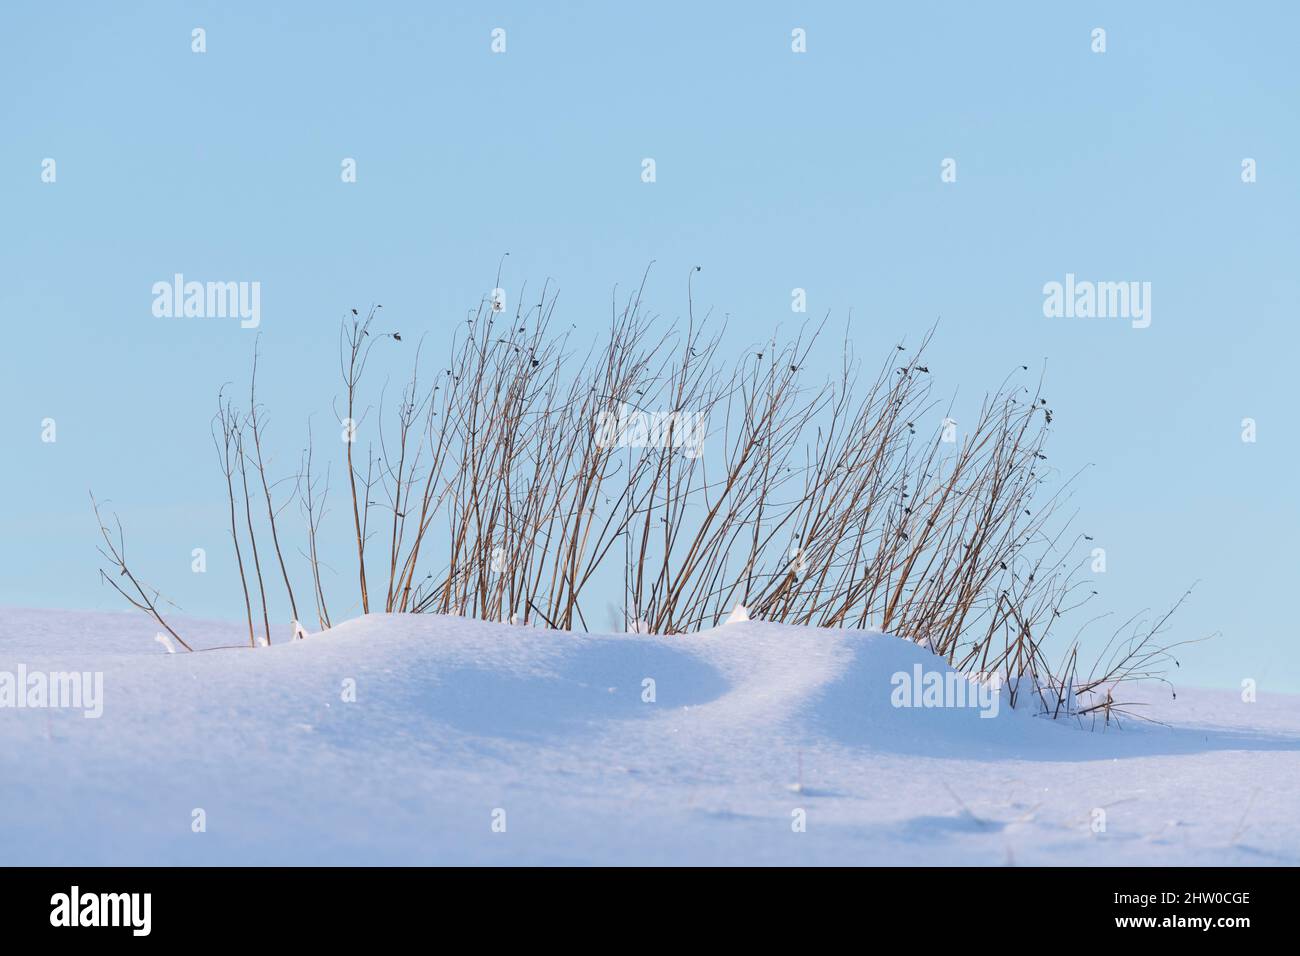 La neve si sgocciolerà intorno alla vegetazione - in questo caso steli morti di Nettle comune (Urtica dioica) - nel sole d'inverno Foto Stock